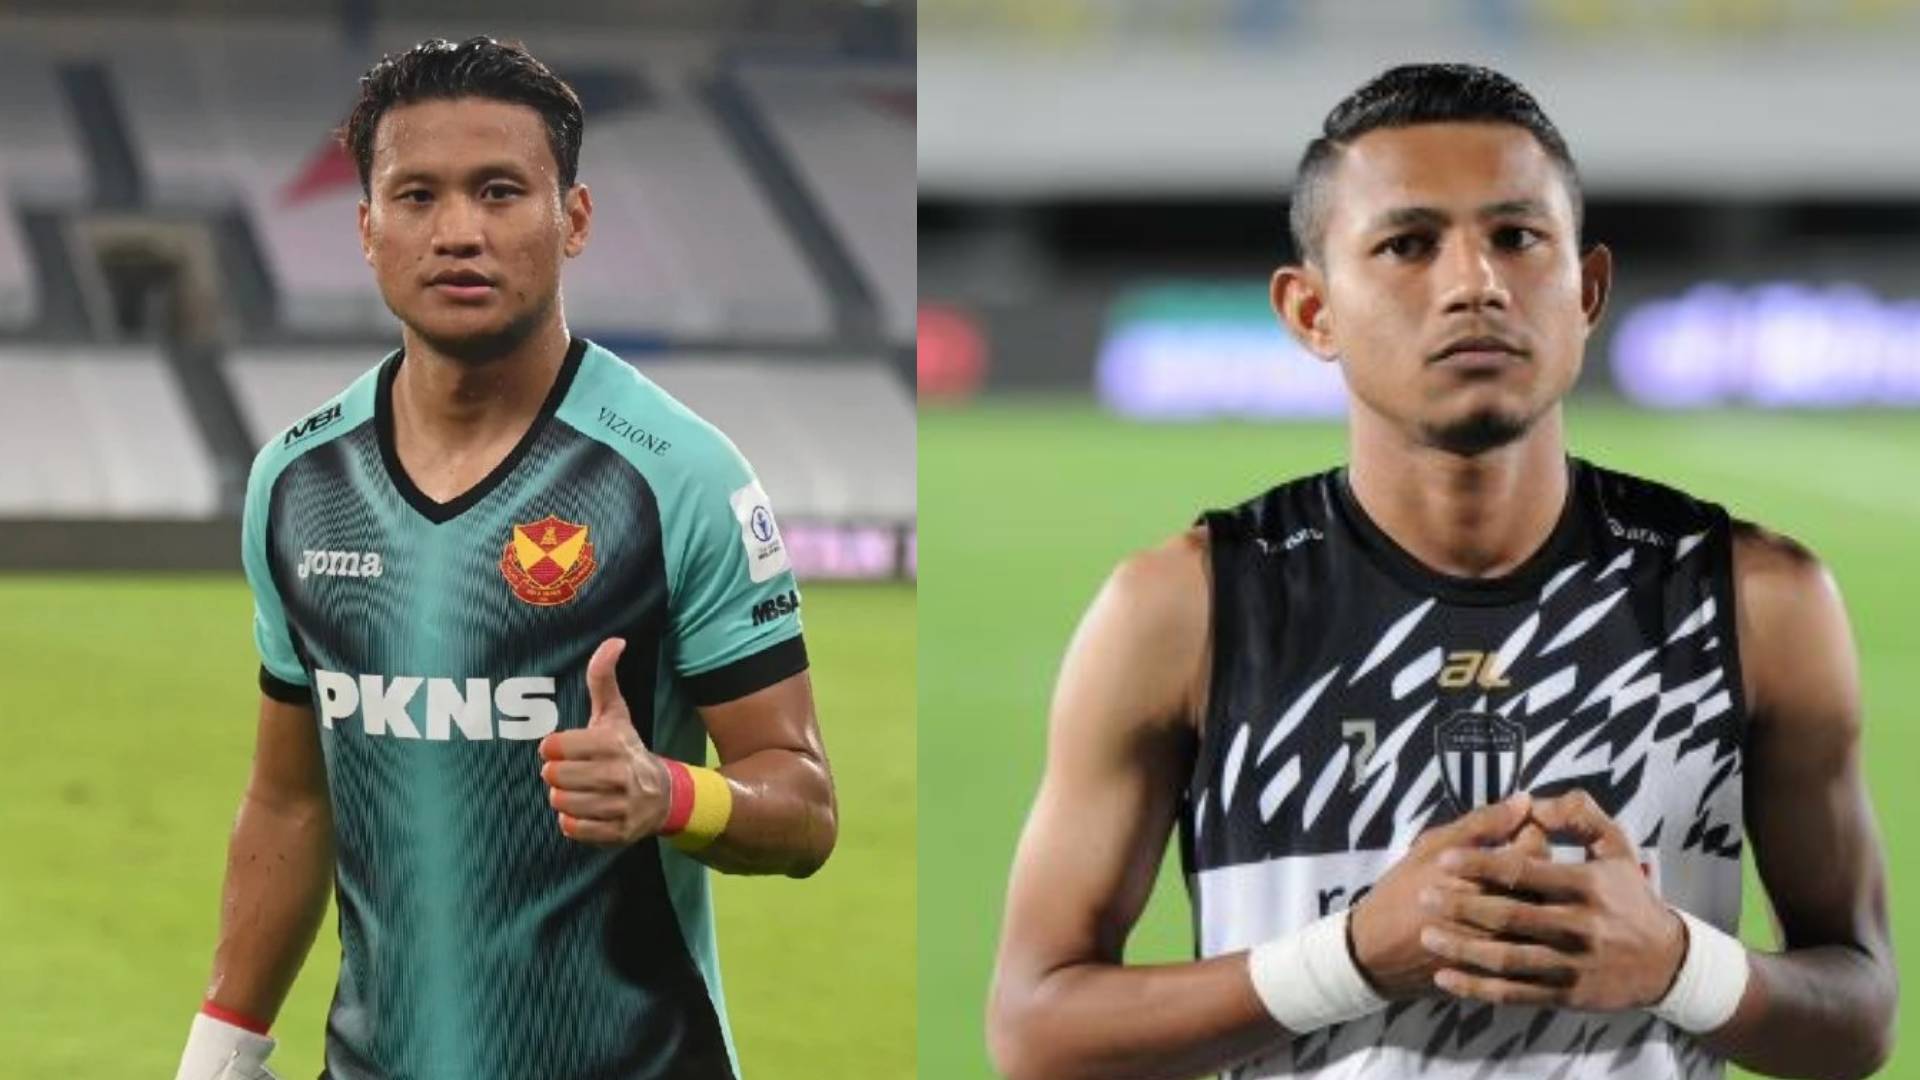 Piala AFF: Faisal Halim & Khairulazhan Disahkan Positif Covid-19